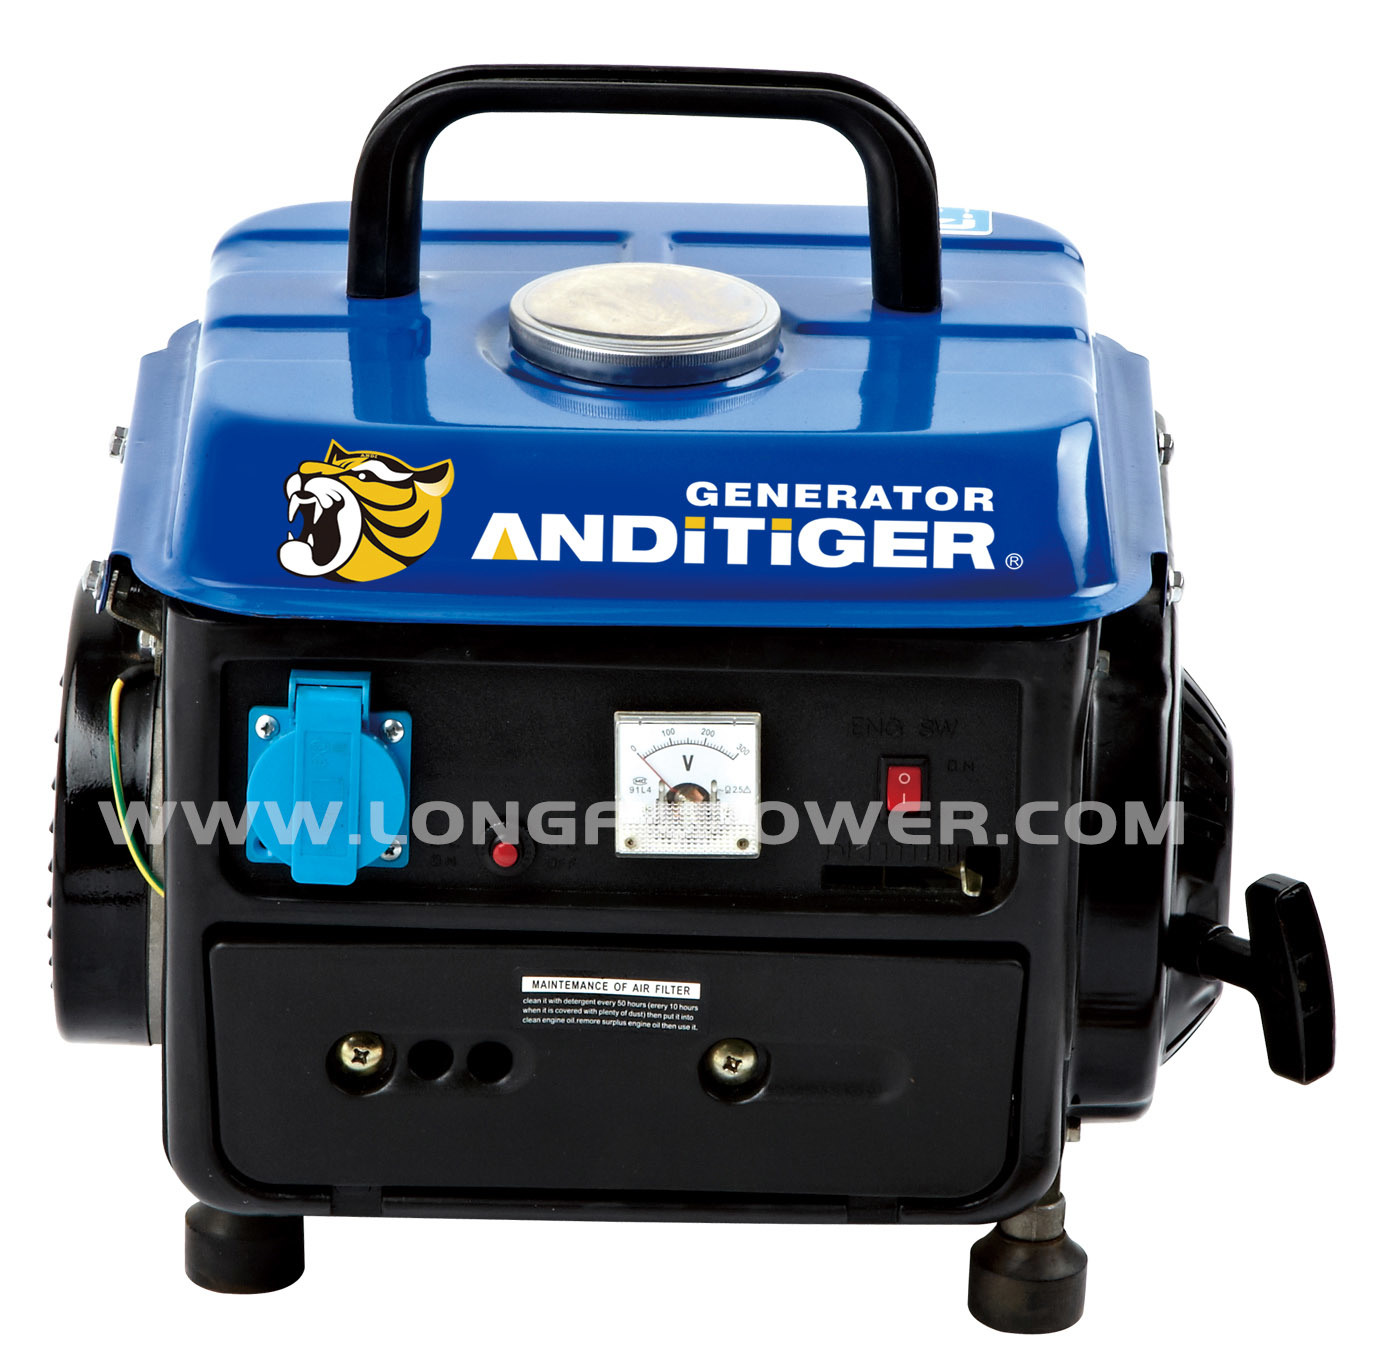 Andi -Tiger 950 Mini Two Stroke Portable Gasoline Petrol Generator